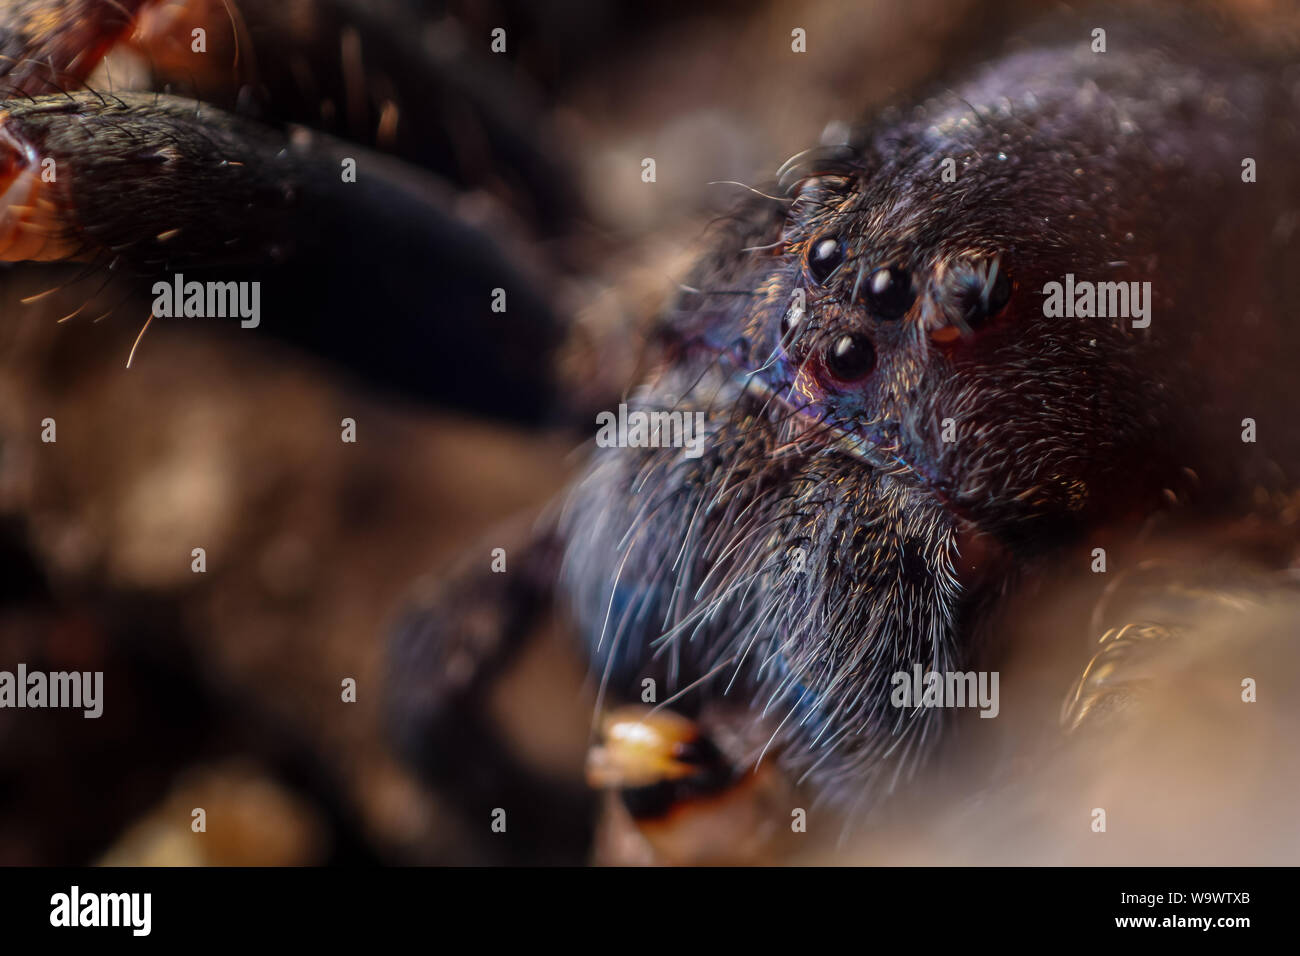 Portrait d'un Ctneus frontale medius araignée d'errance la forêt atlantique au Brésil, présente le visage et les yeux de l'araignée Banque D'Images